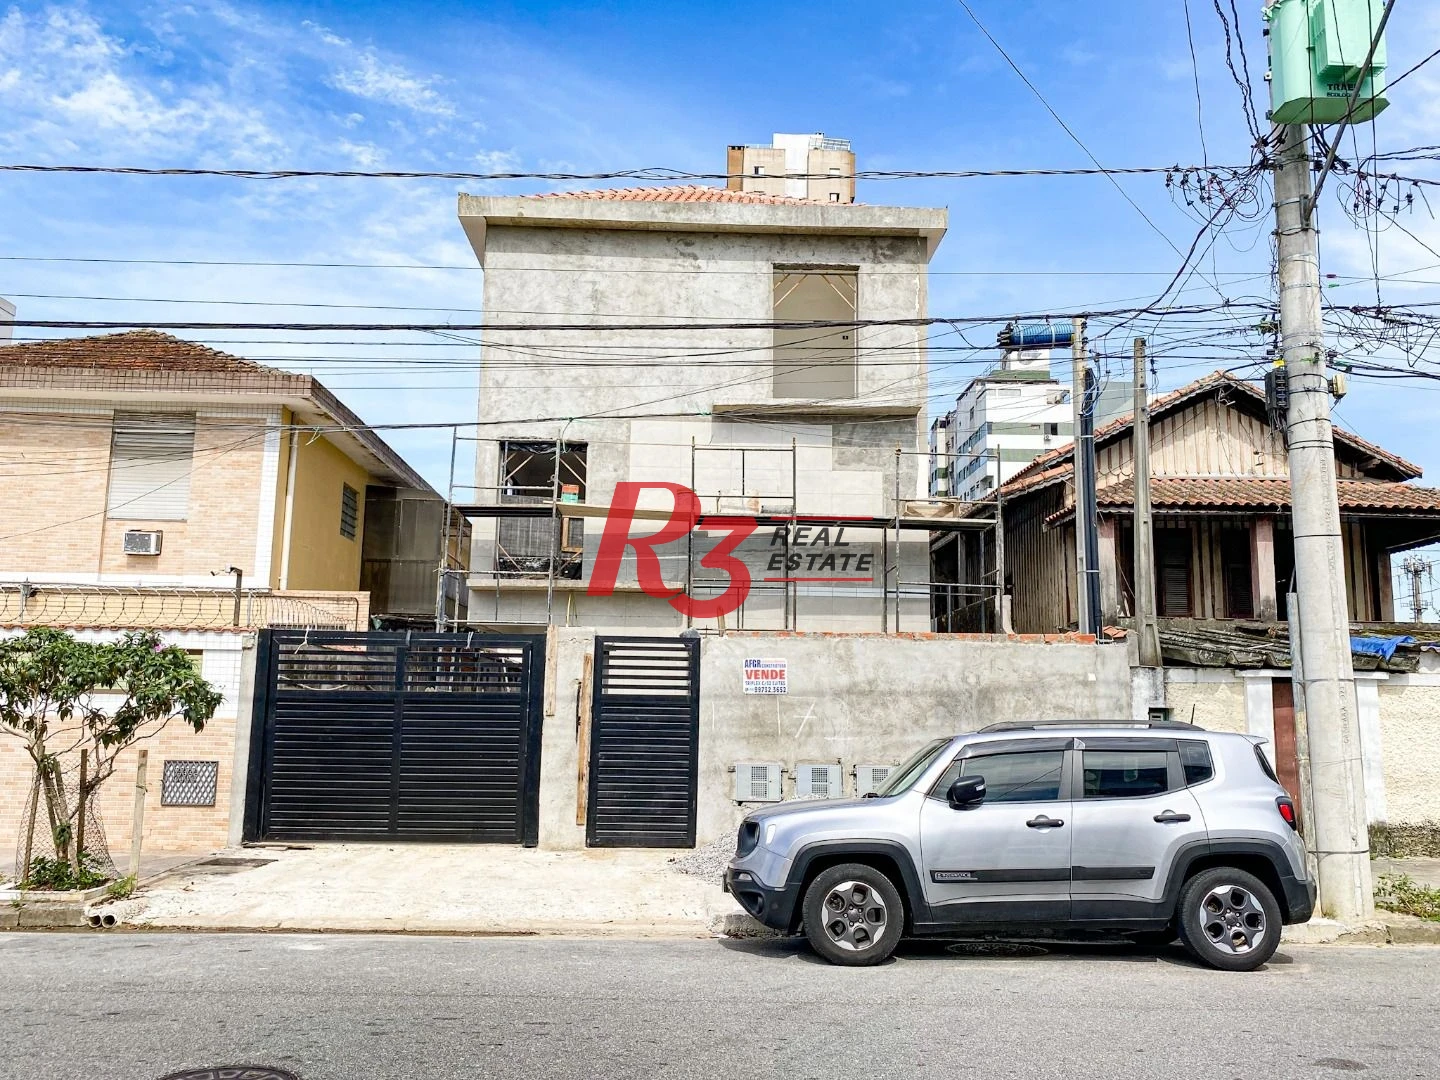 Sobrado triplex  à venda  em villagio no bairro do Macuco. 94 m², 2 suítes, vaga para 2 carros  e 1 moto e espaço com churrasqueira e quintal !!